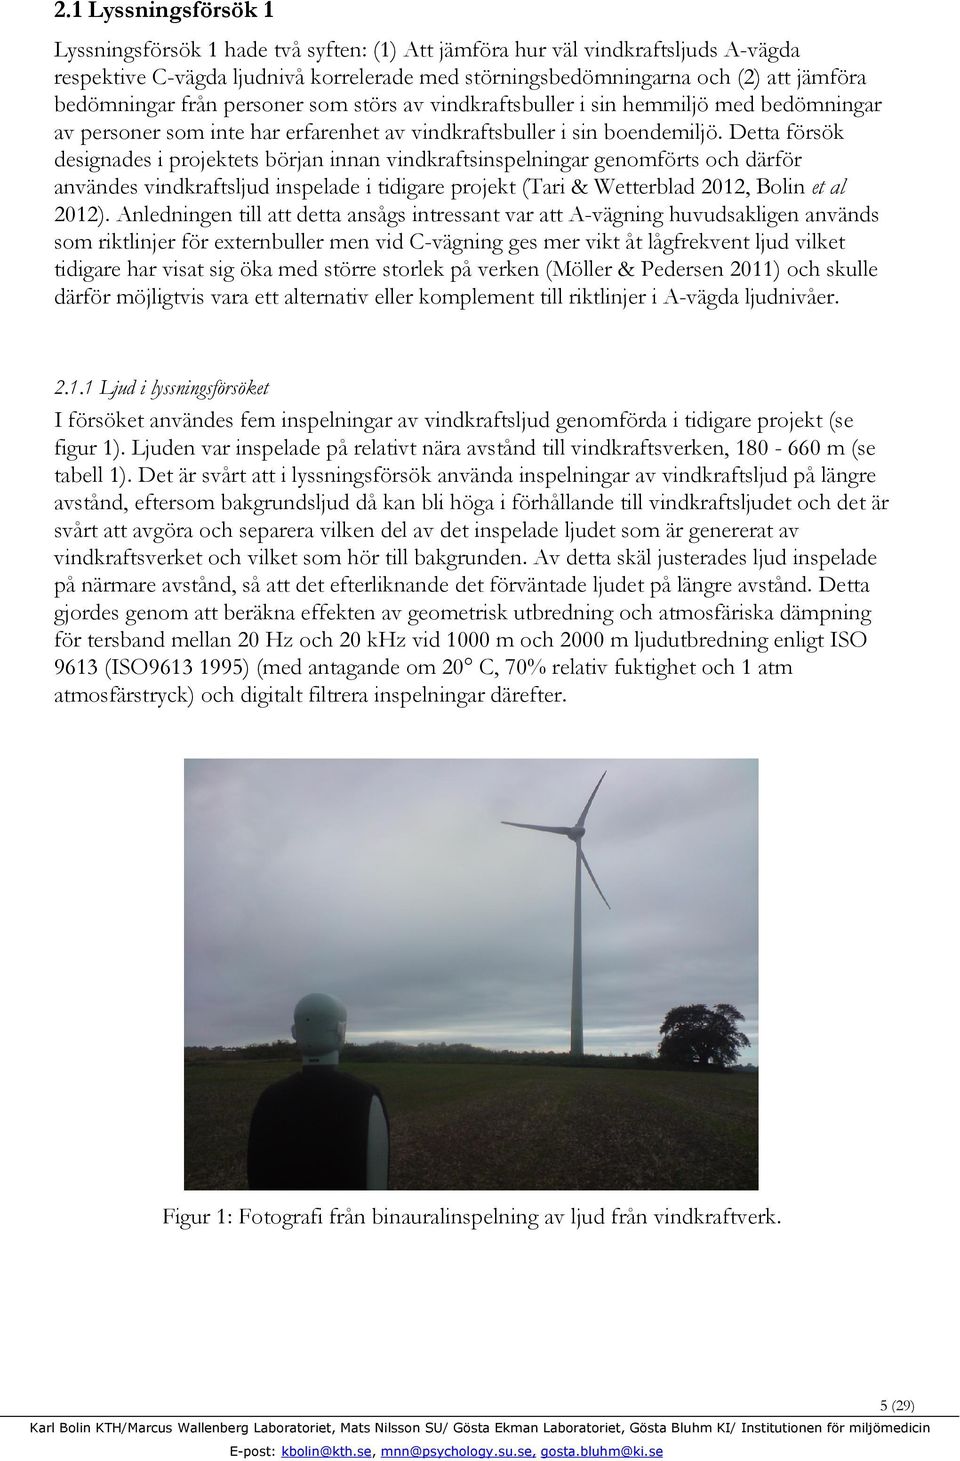 Detta försök designades i projektets början innan vindkraftsinspelningar genomförts och därför användes vindkraftsljud inspelade i tidigare projekt (Tari & Wetterblad 2012, Bolin et al 2012).